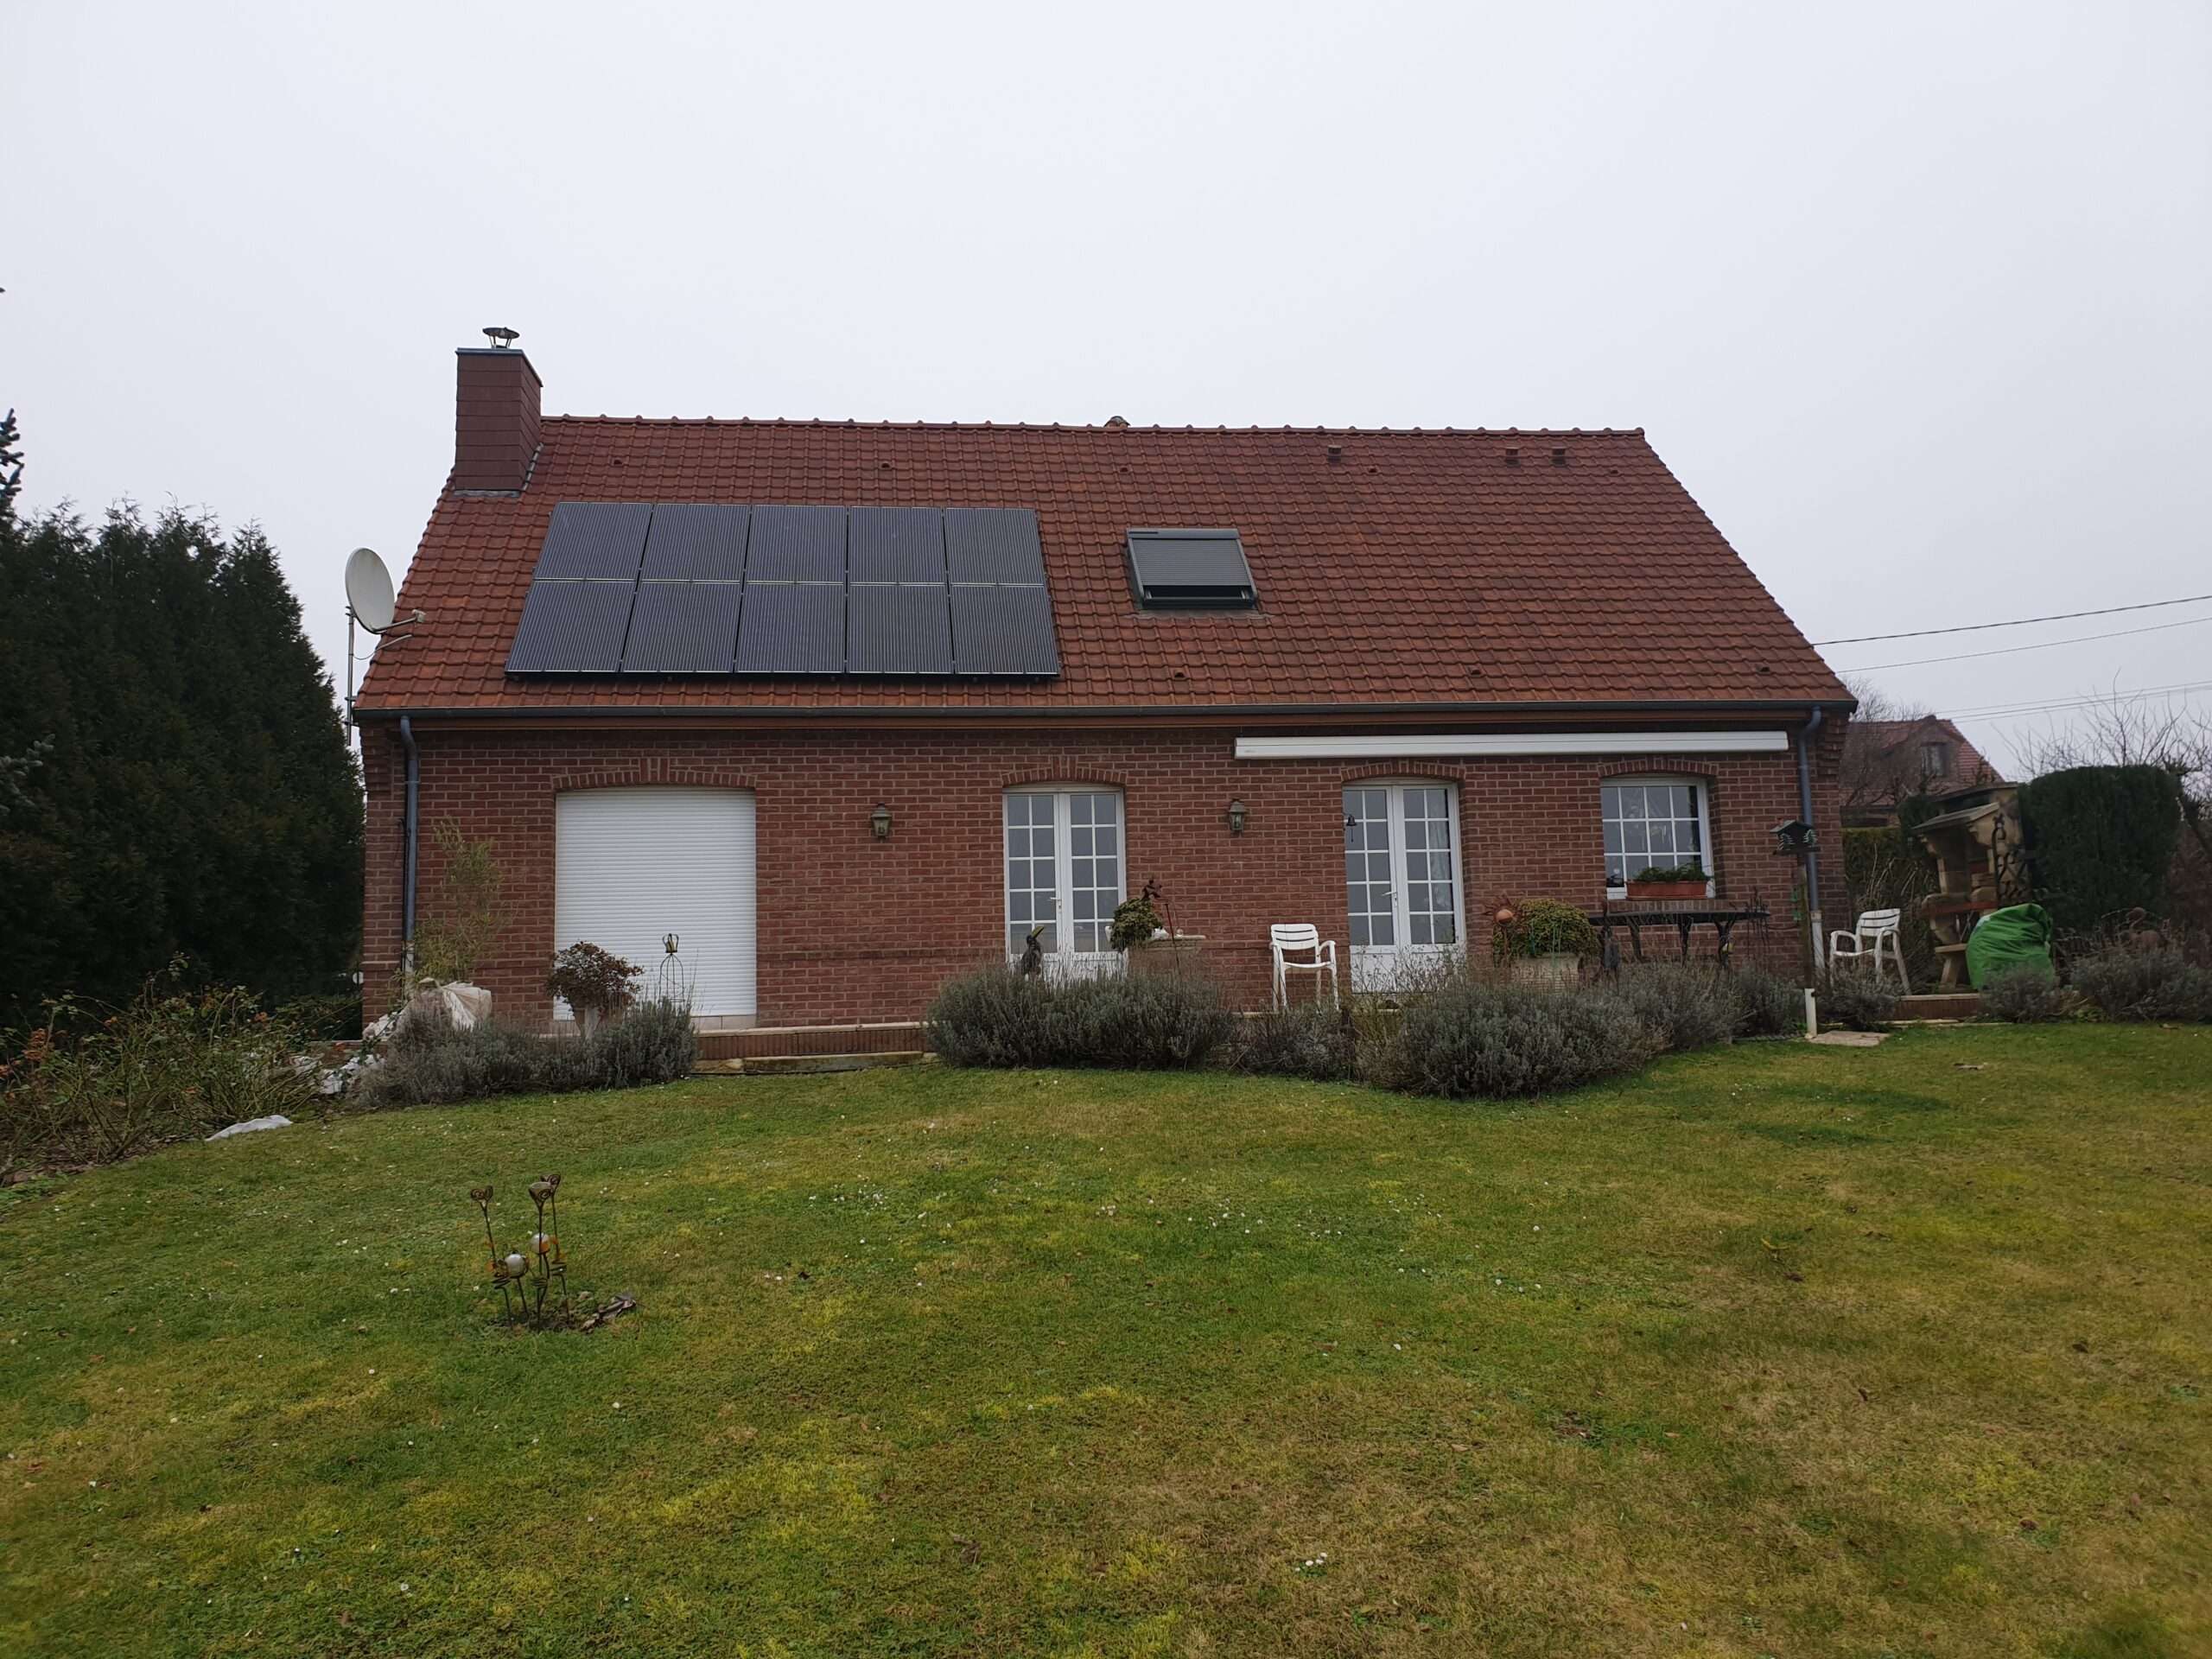 Maison avec installation photovoltaïque de 3kwc sur la toiture.